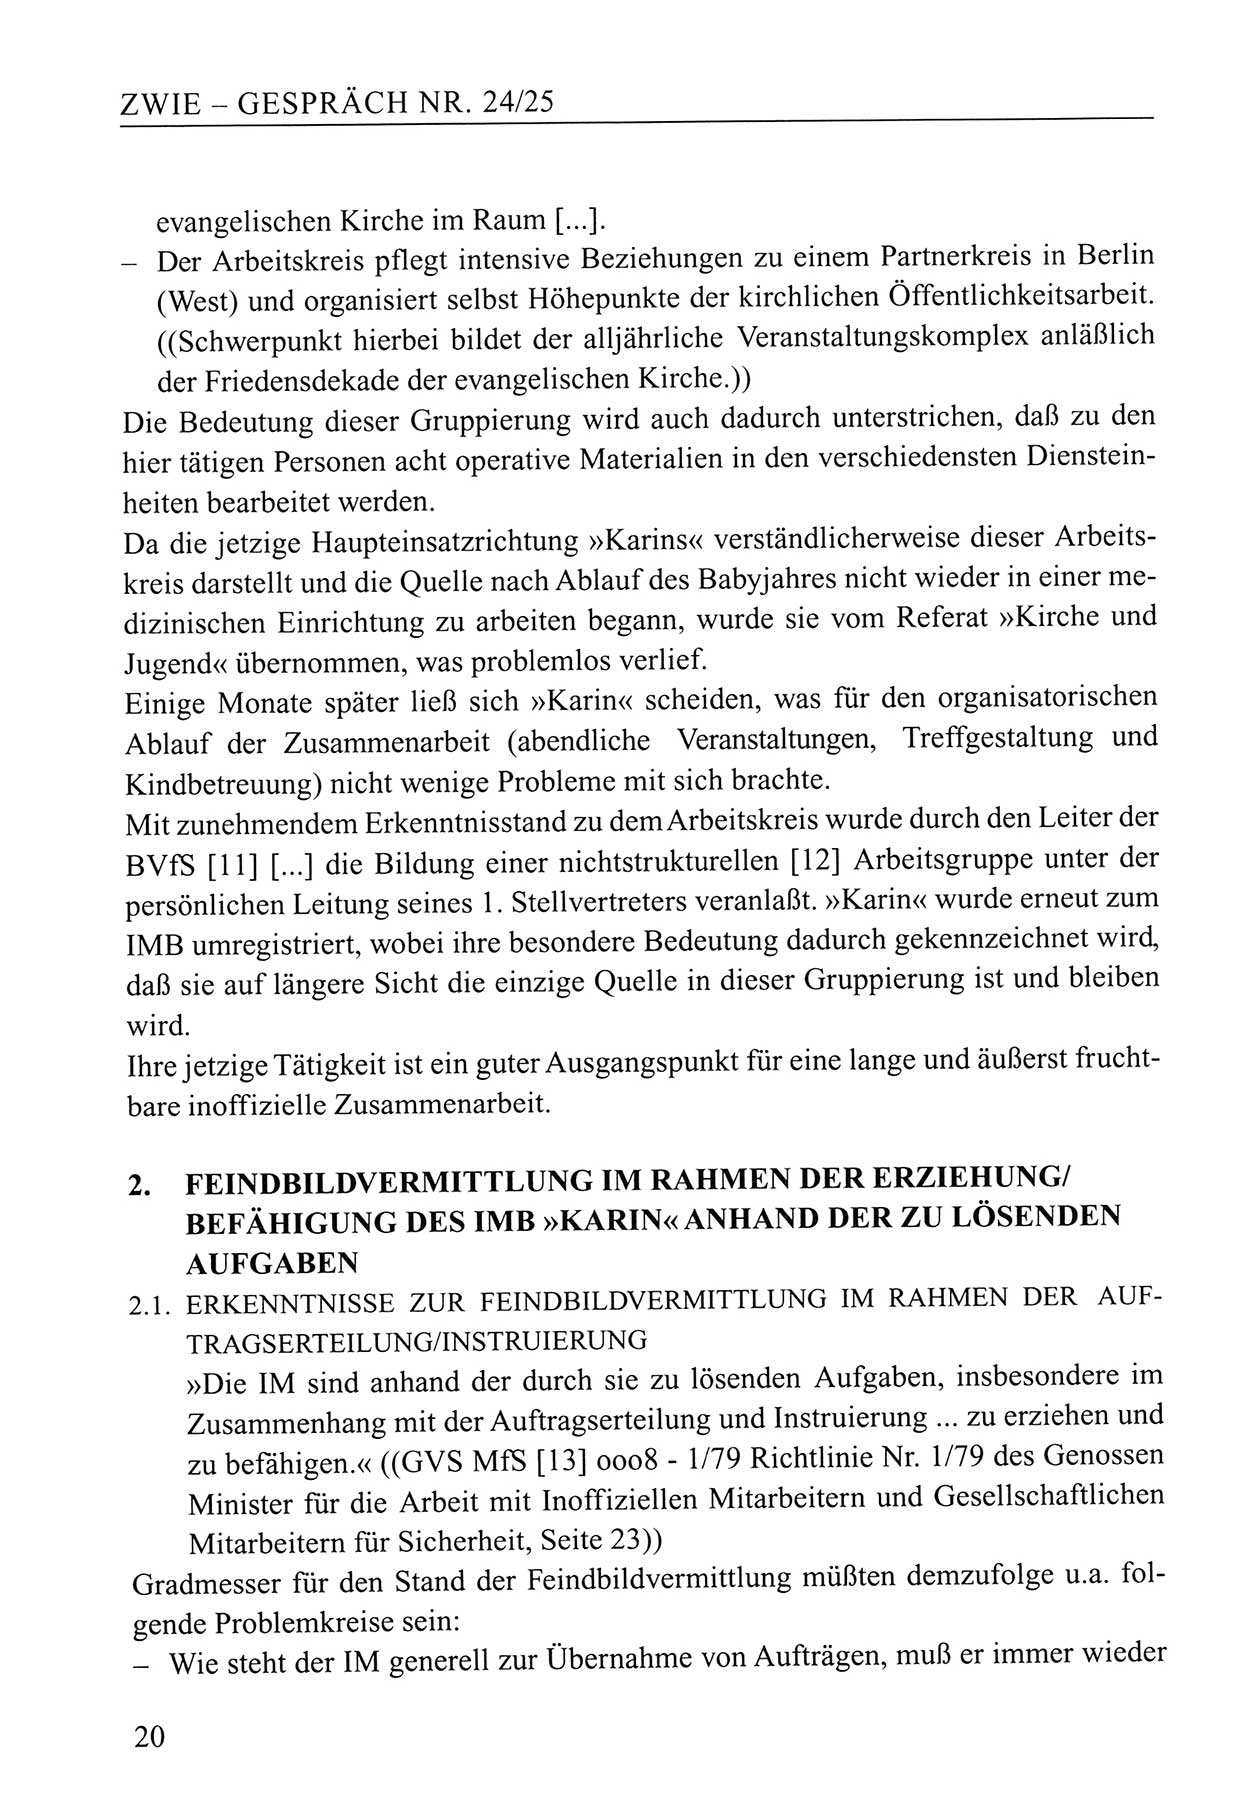 Zwie-Gespräch, Beiträge zum Umgang mit der Staatssicherheits-Vergangenheit [Deutsche Demokratische Republik (DDR)], Ausgabe Nr. 24/25, Berlin 1994, Seite 20 (Zwie-Gespr. Ausg. 24/25 1994, S. 20)